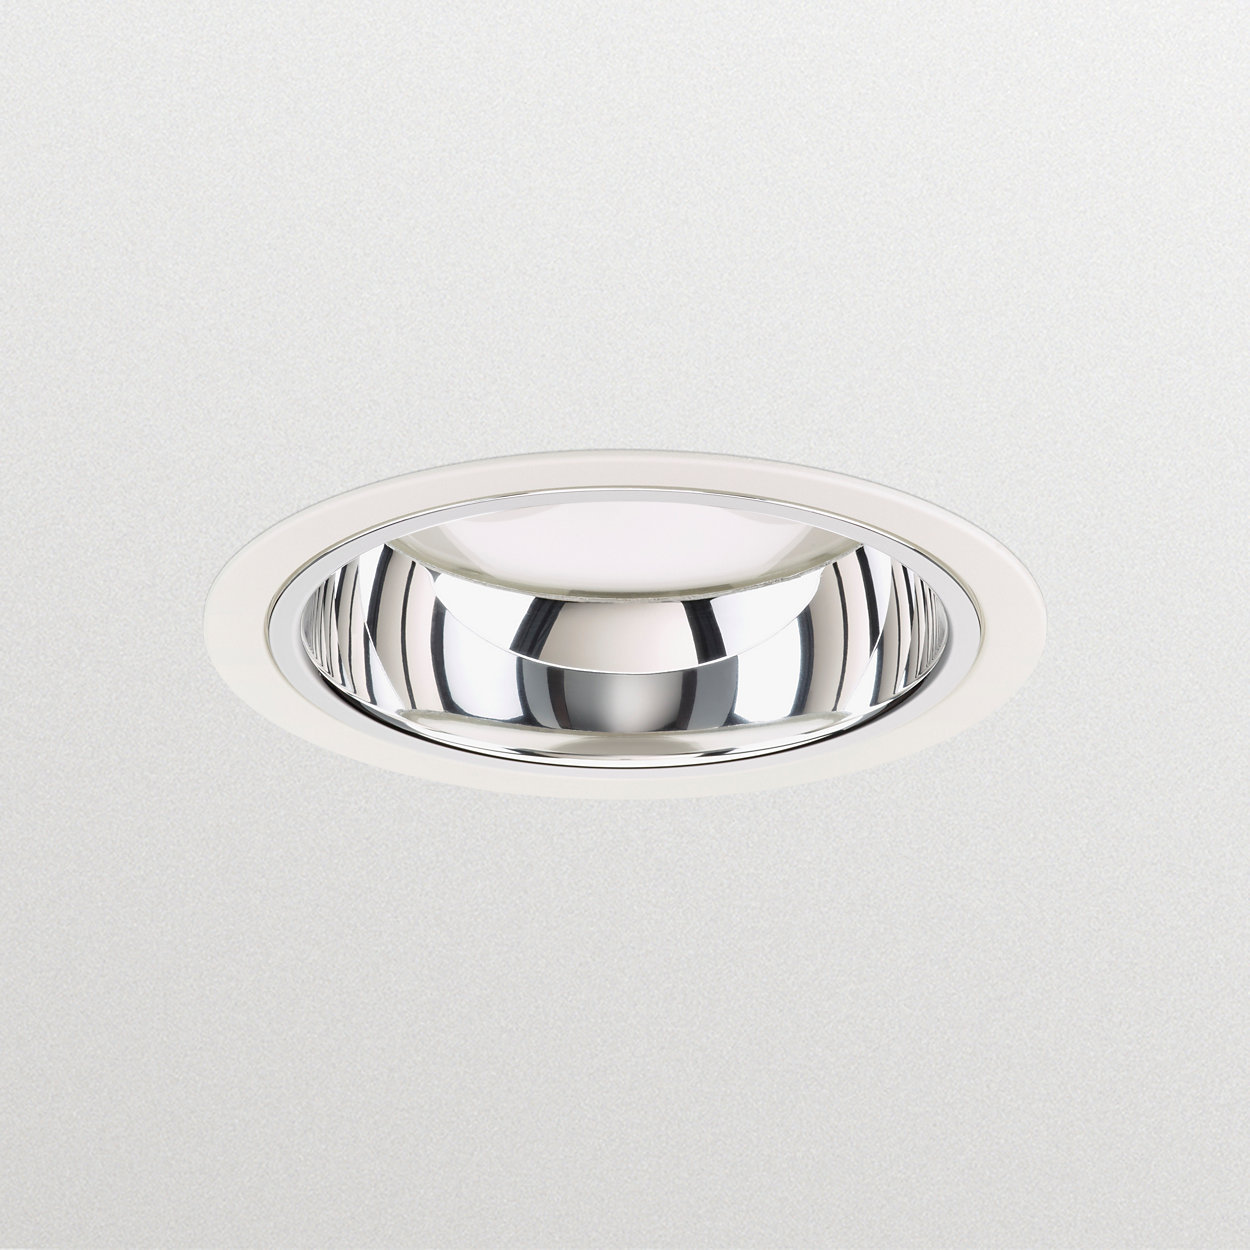 LuxSpace Mini Einbaudownlight - hohe Effizienz, hoher Komfort und elegantes Design